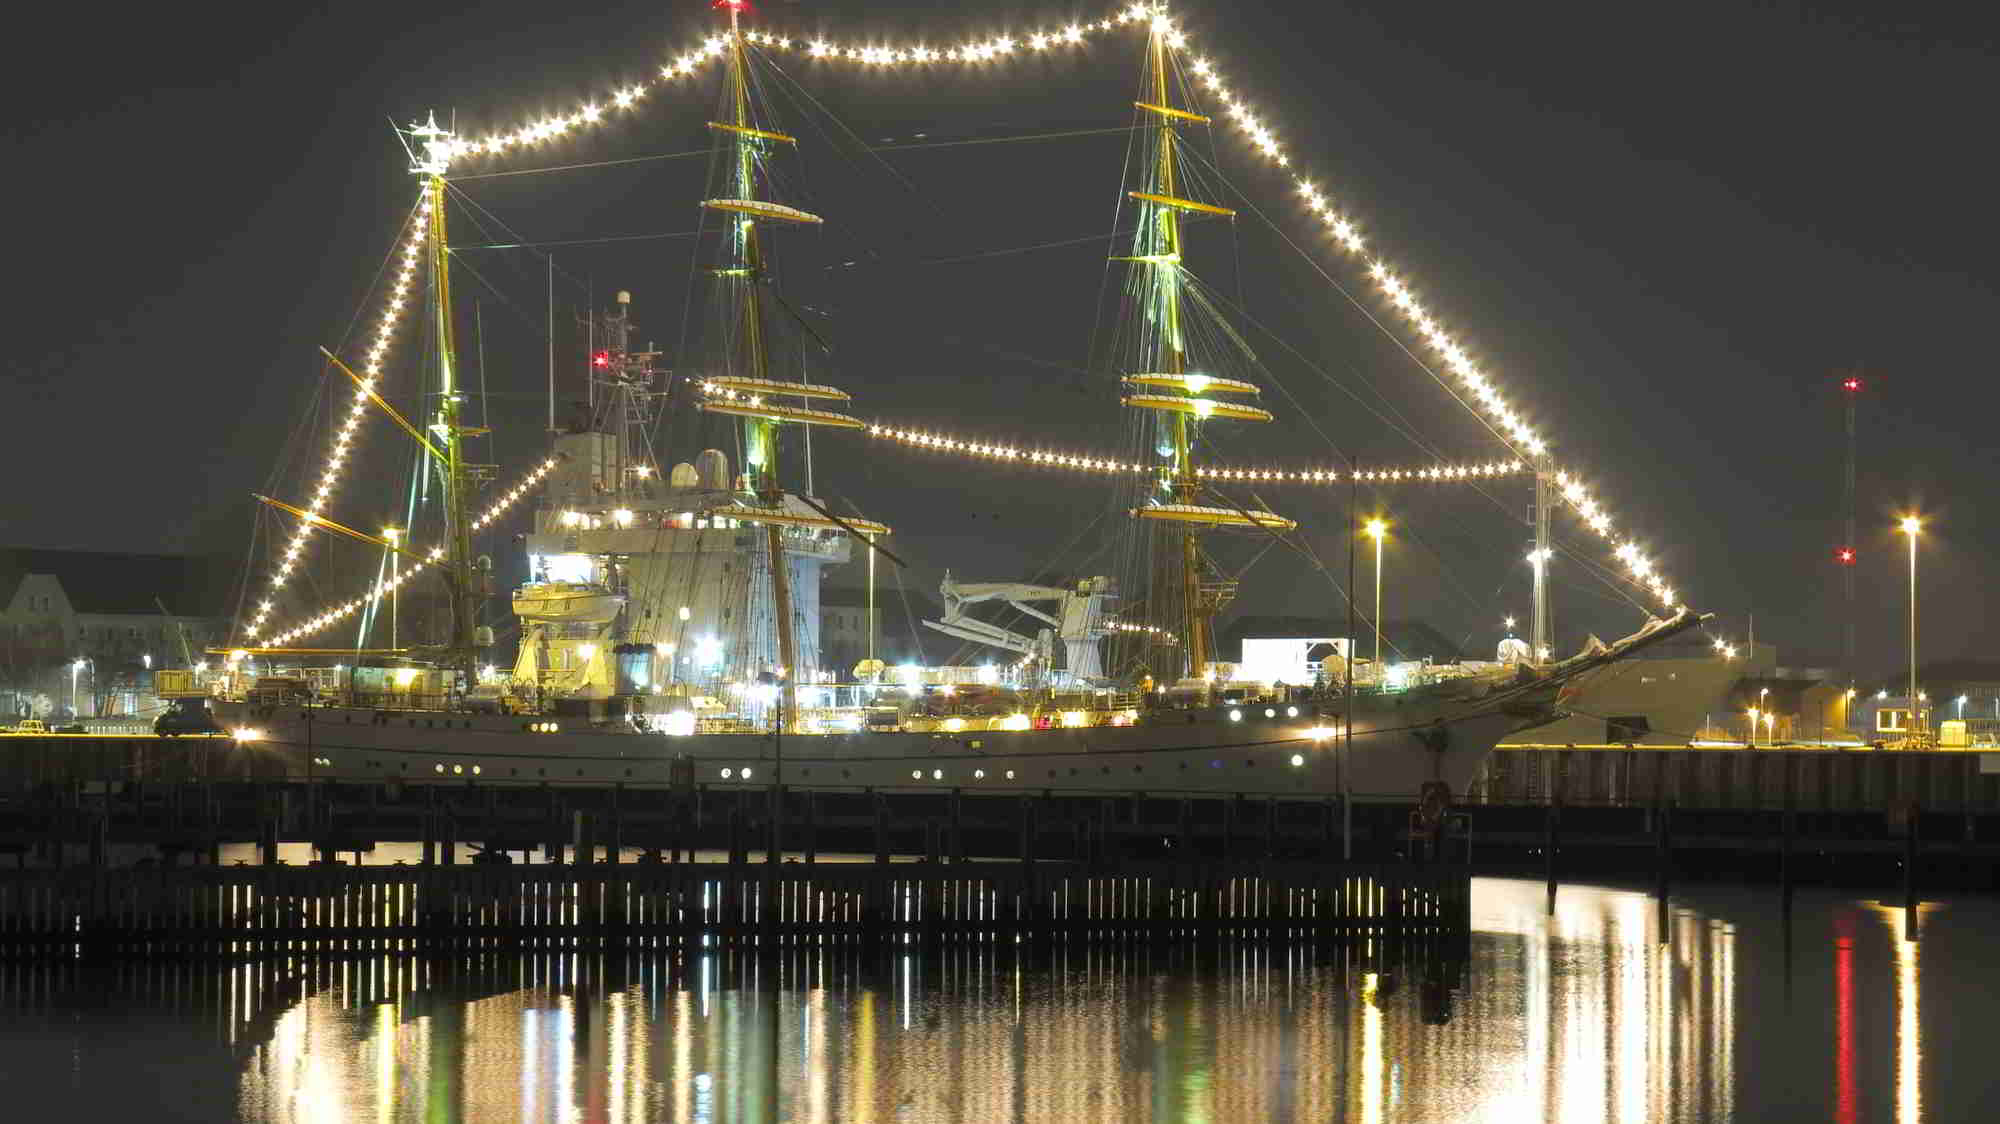 Archivbild: Gorch Fock mit Beleuchtung in einem Kieler Hafen